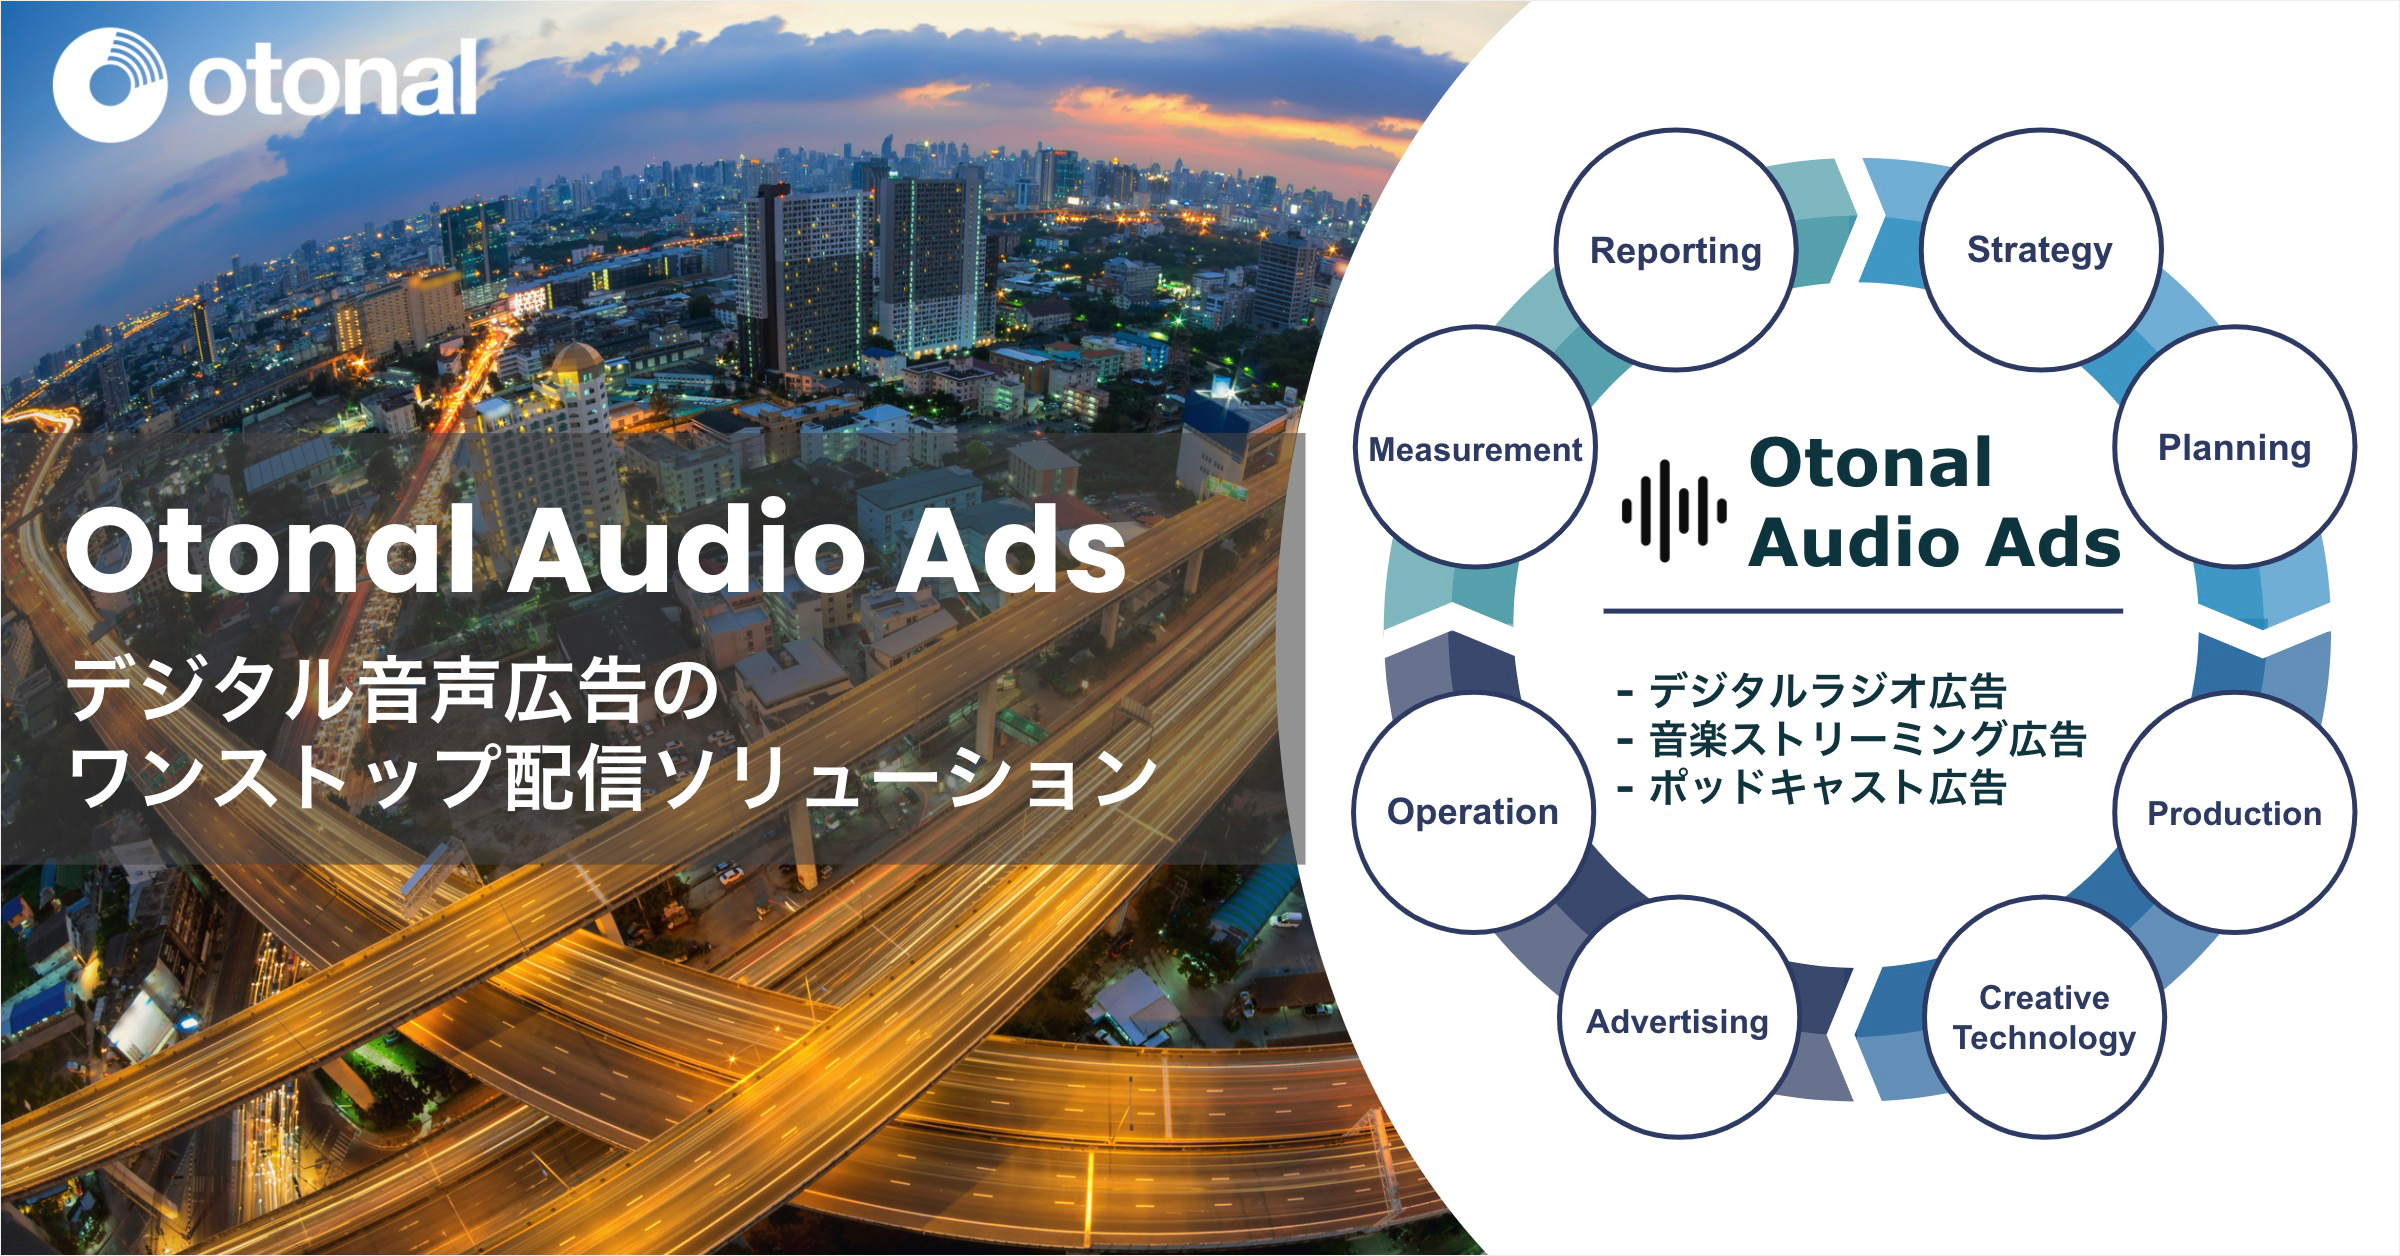 デジタル音声広告のワンストップ配信ソリューション『Otonal Audio Ads』